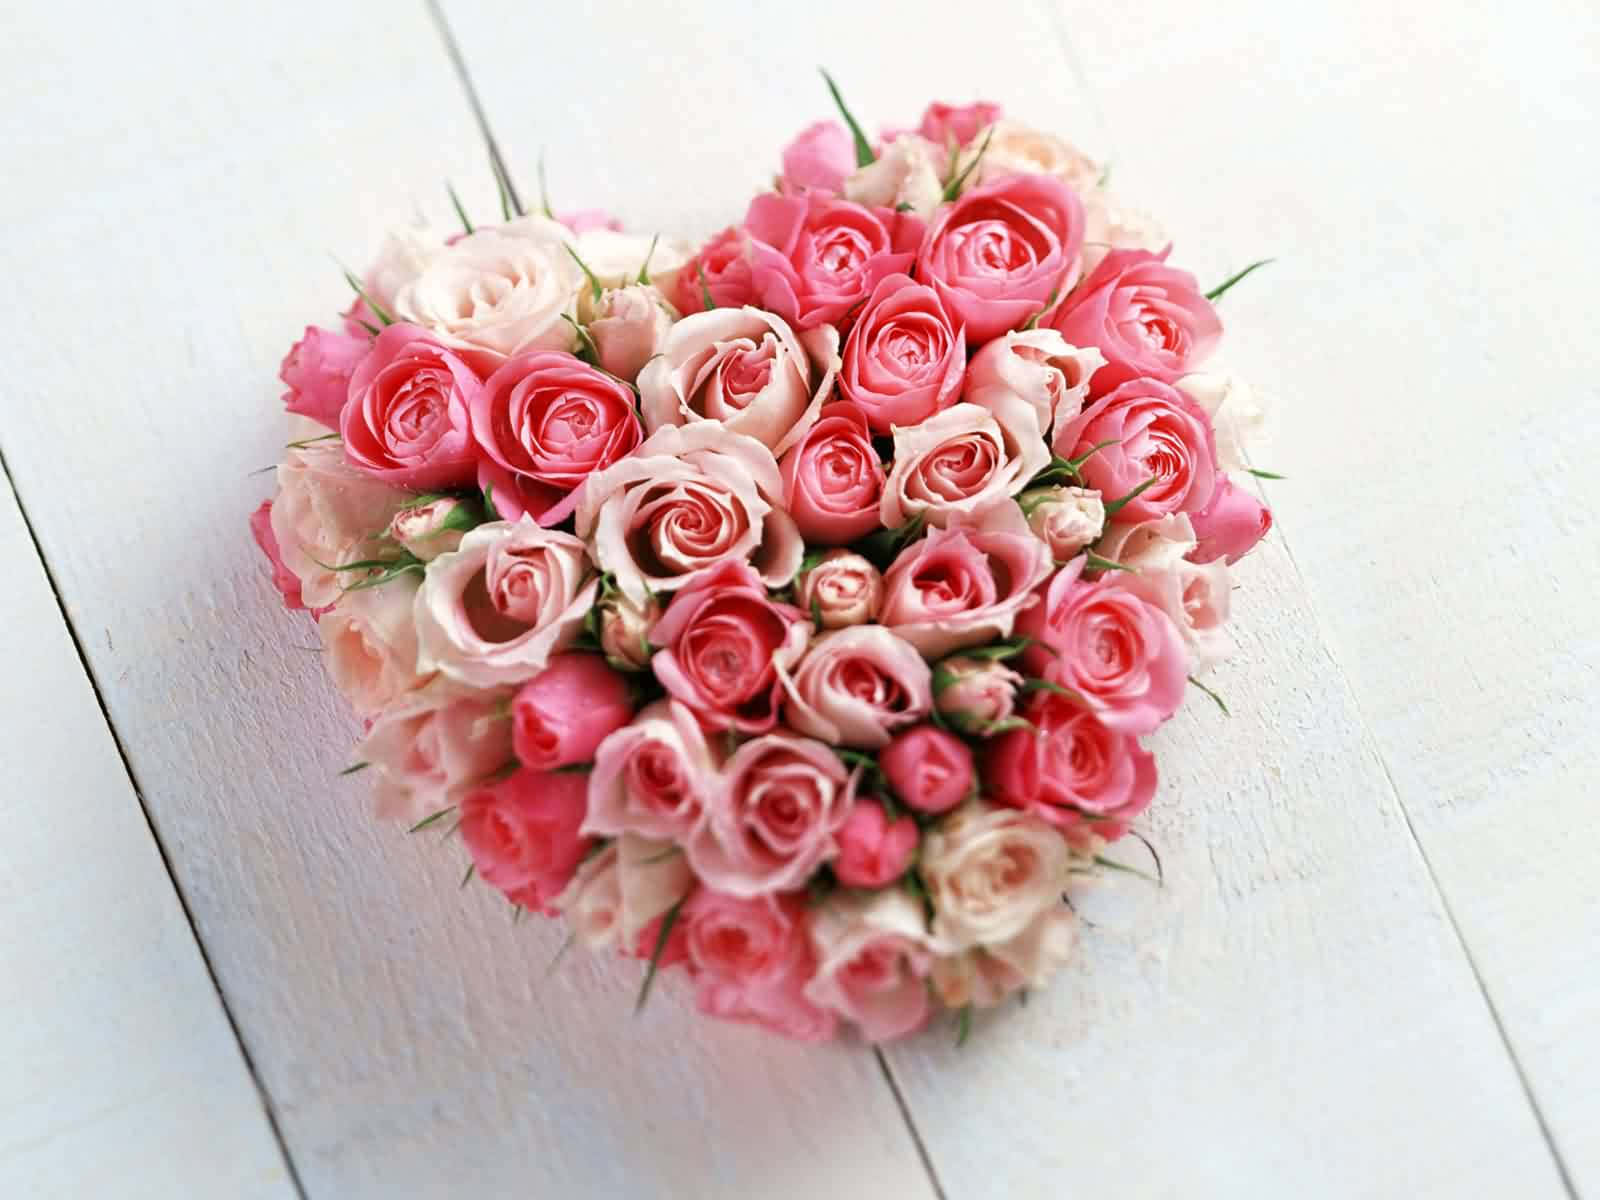 Unadisposición En Forma De Corazón De Rosas Rosadas Y Blancas.